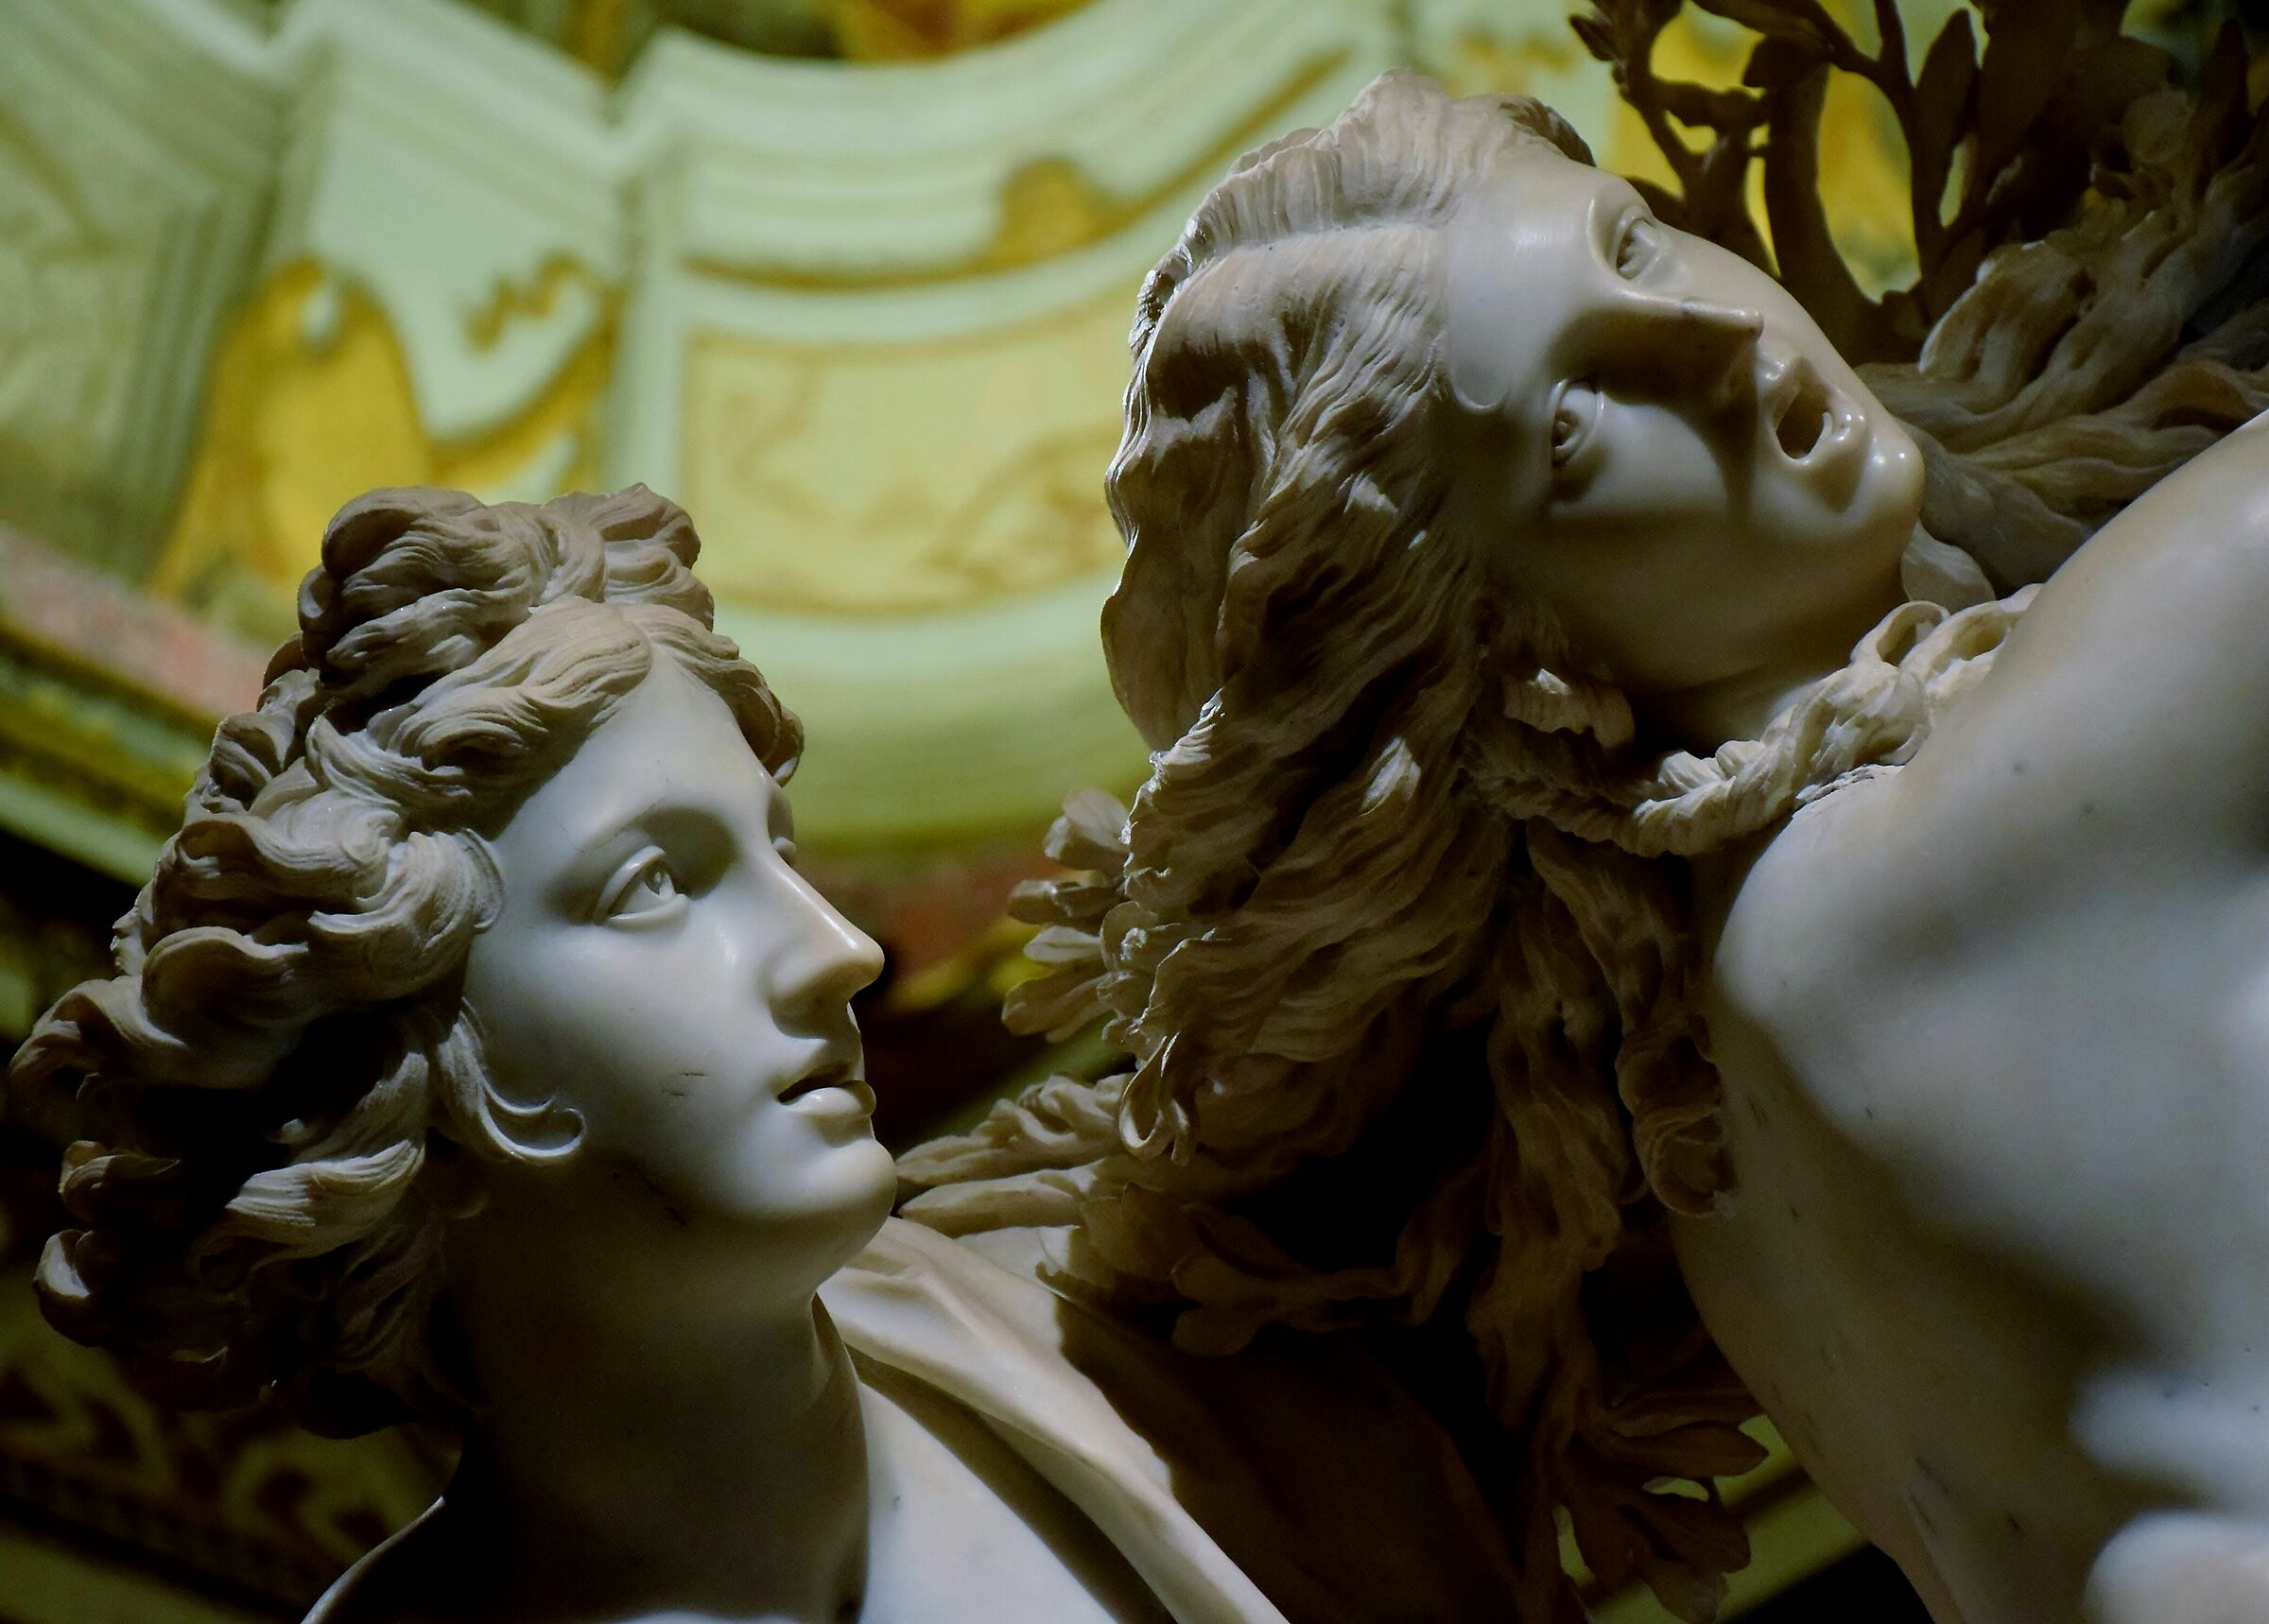 Borghese Gallery - Bernini "Apollo and Dafne"...